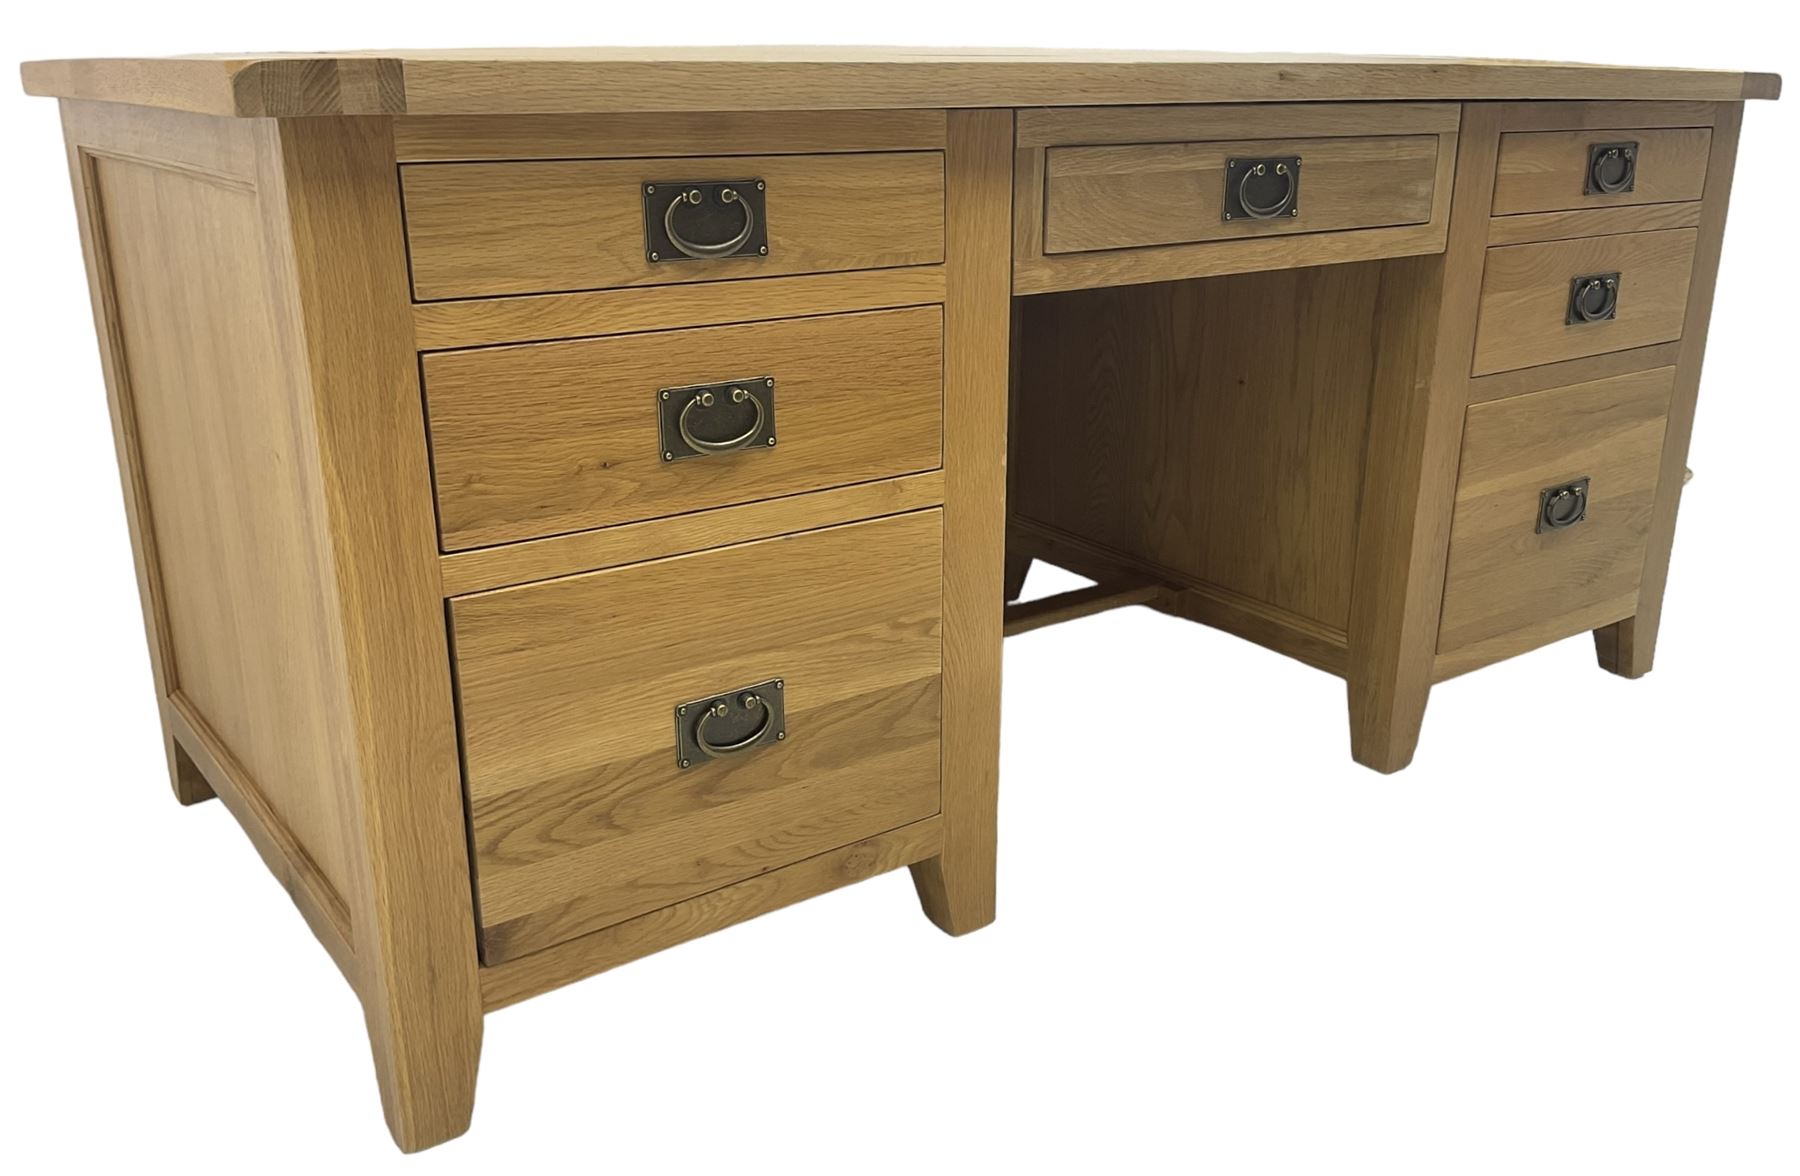 Light oak twin pedestal desk - Image 5 of 6